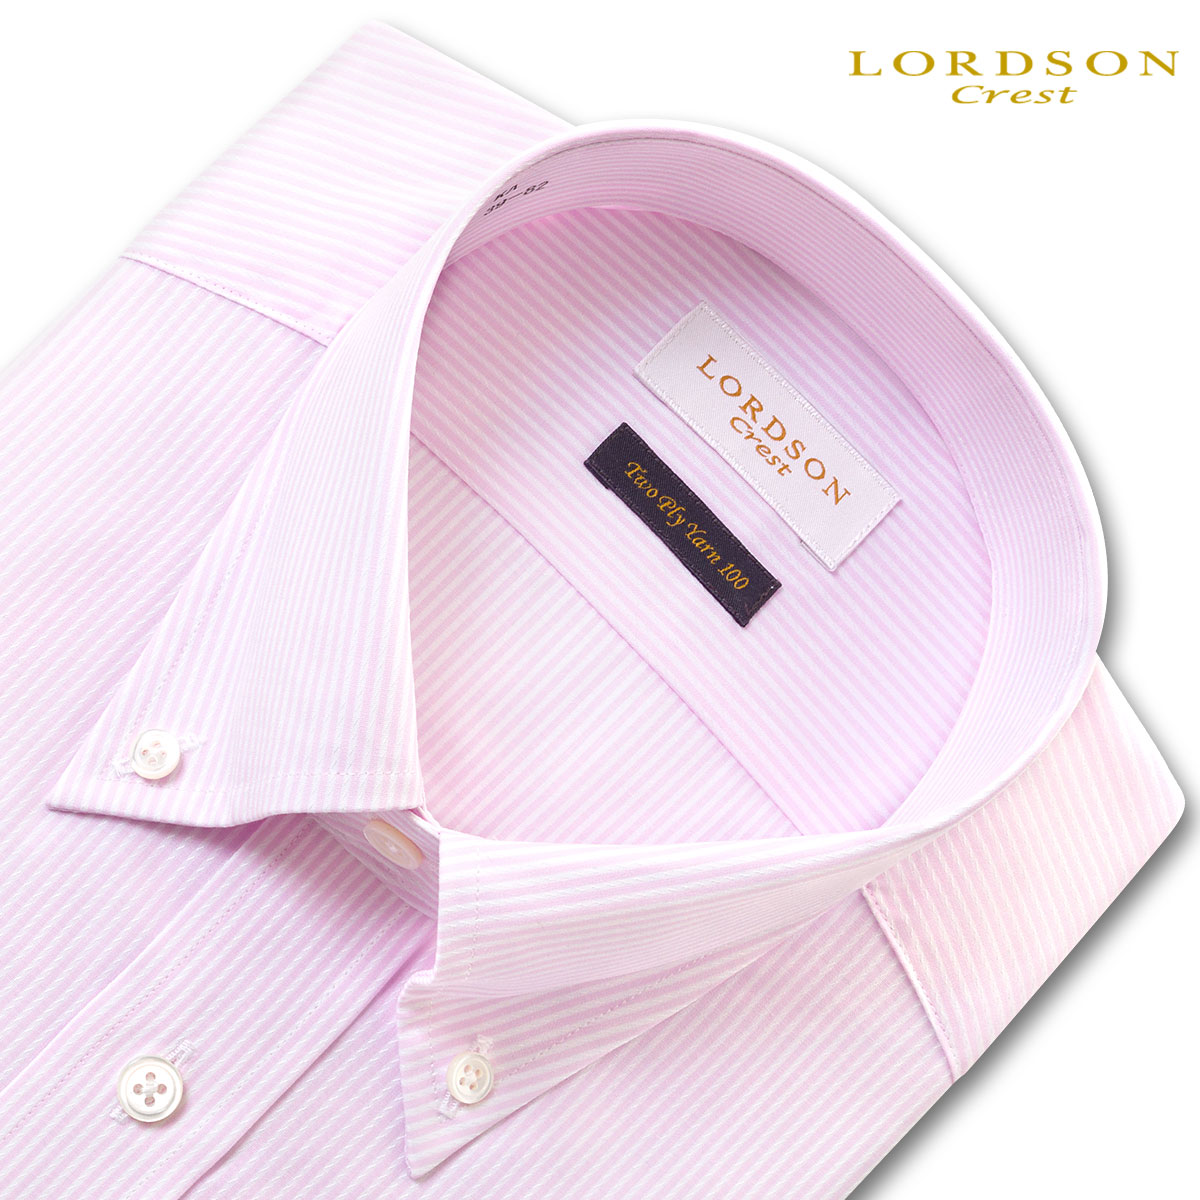 LORDSON Crest 長袖 ワイシャツ メンズ 形態安定 スリムフィット ボタンダウンカラー ブロックストライプ 薄ピンク バイアスドビー 綿100 (zod956-410)